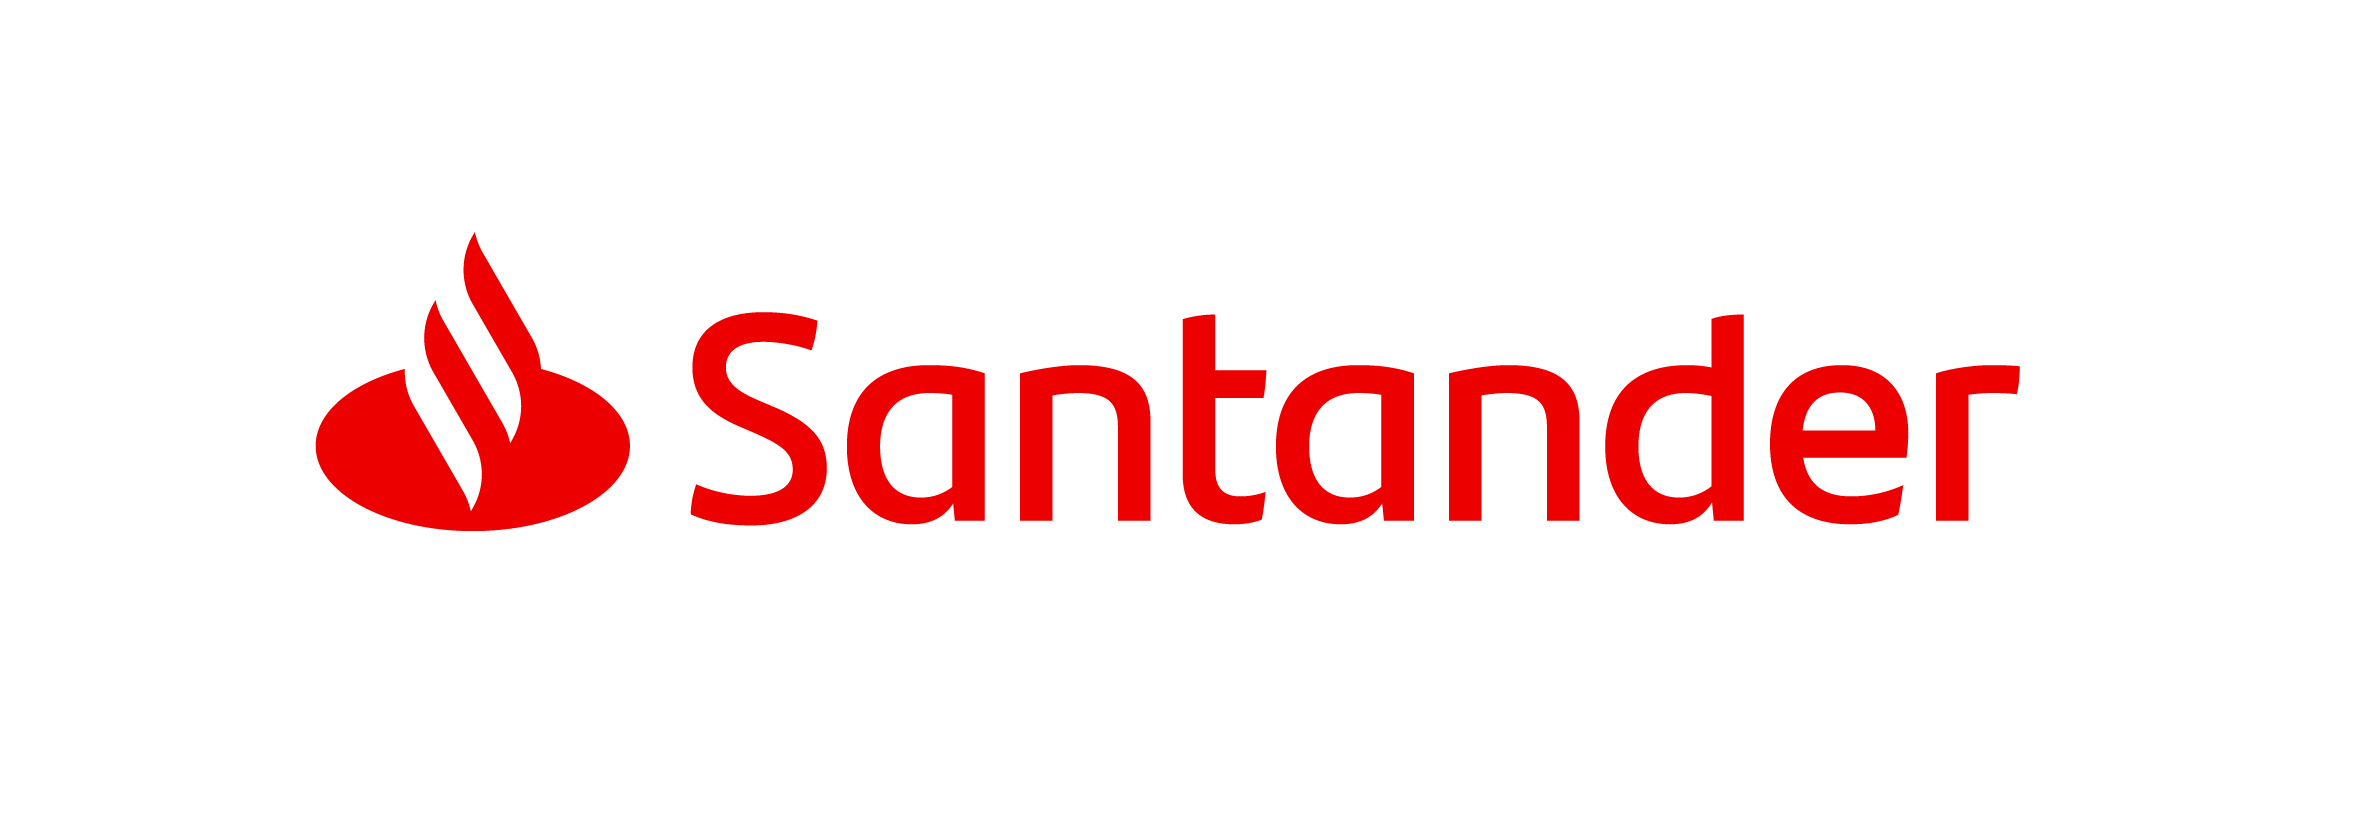 Santander renueva su marca para reforzar la estrategia digital